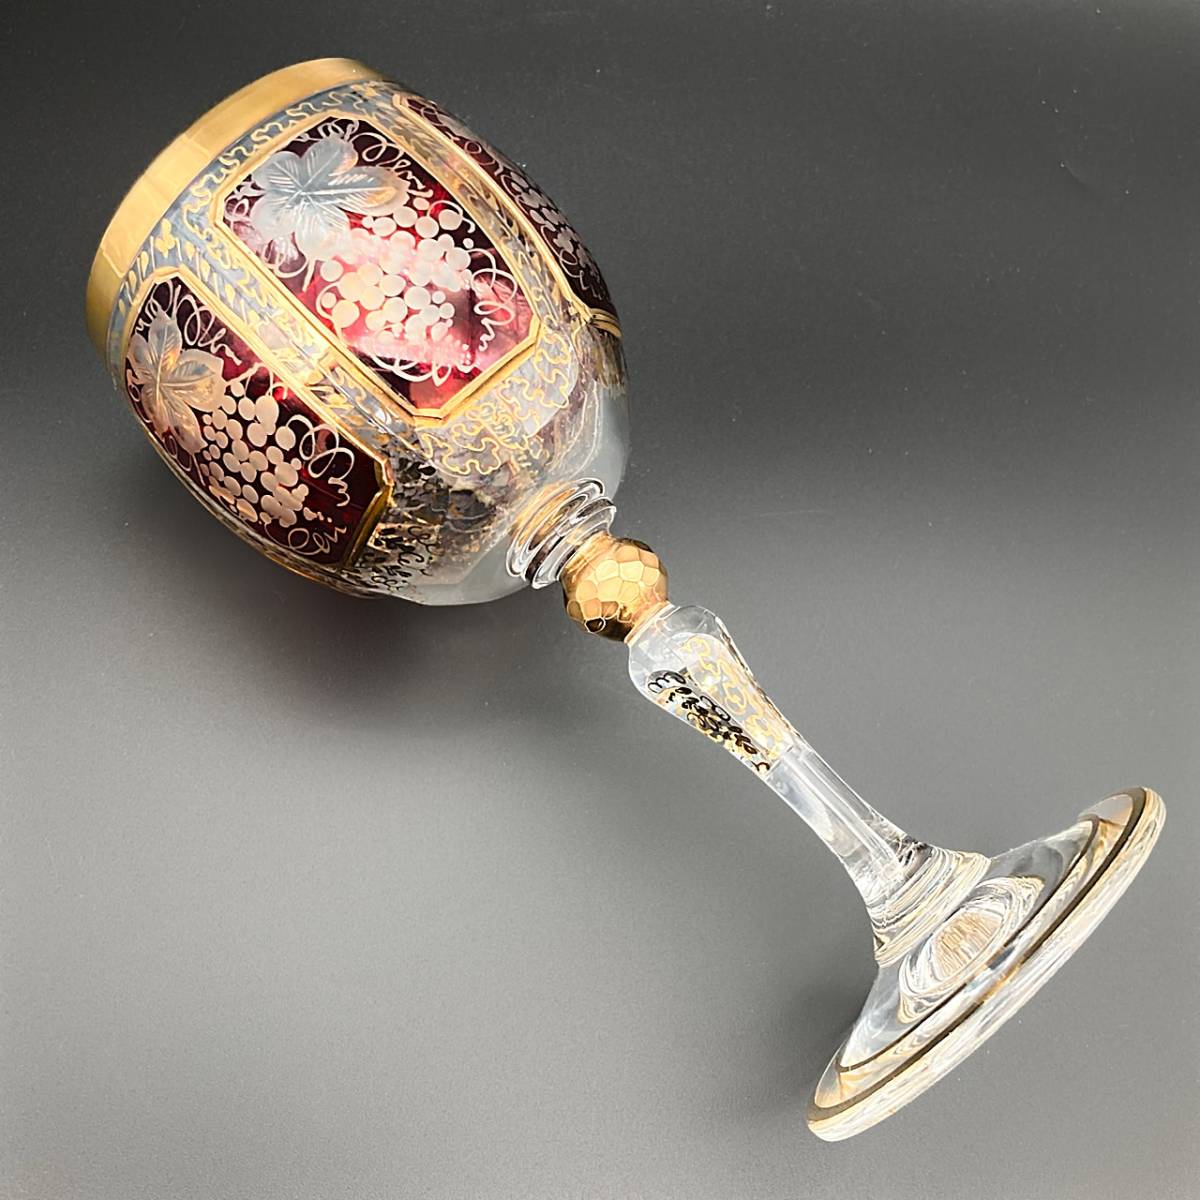 ボヘミアガラス エーゲルマン パネルグラス ワイングラス 葡萄文 レッド 金彩 ボヘミアン グラス 15.4cm